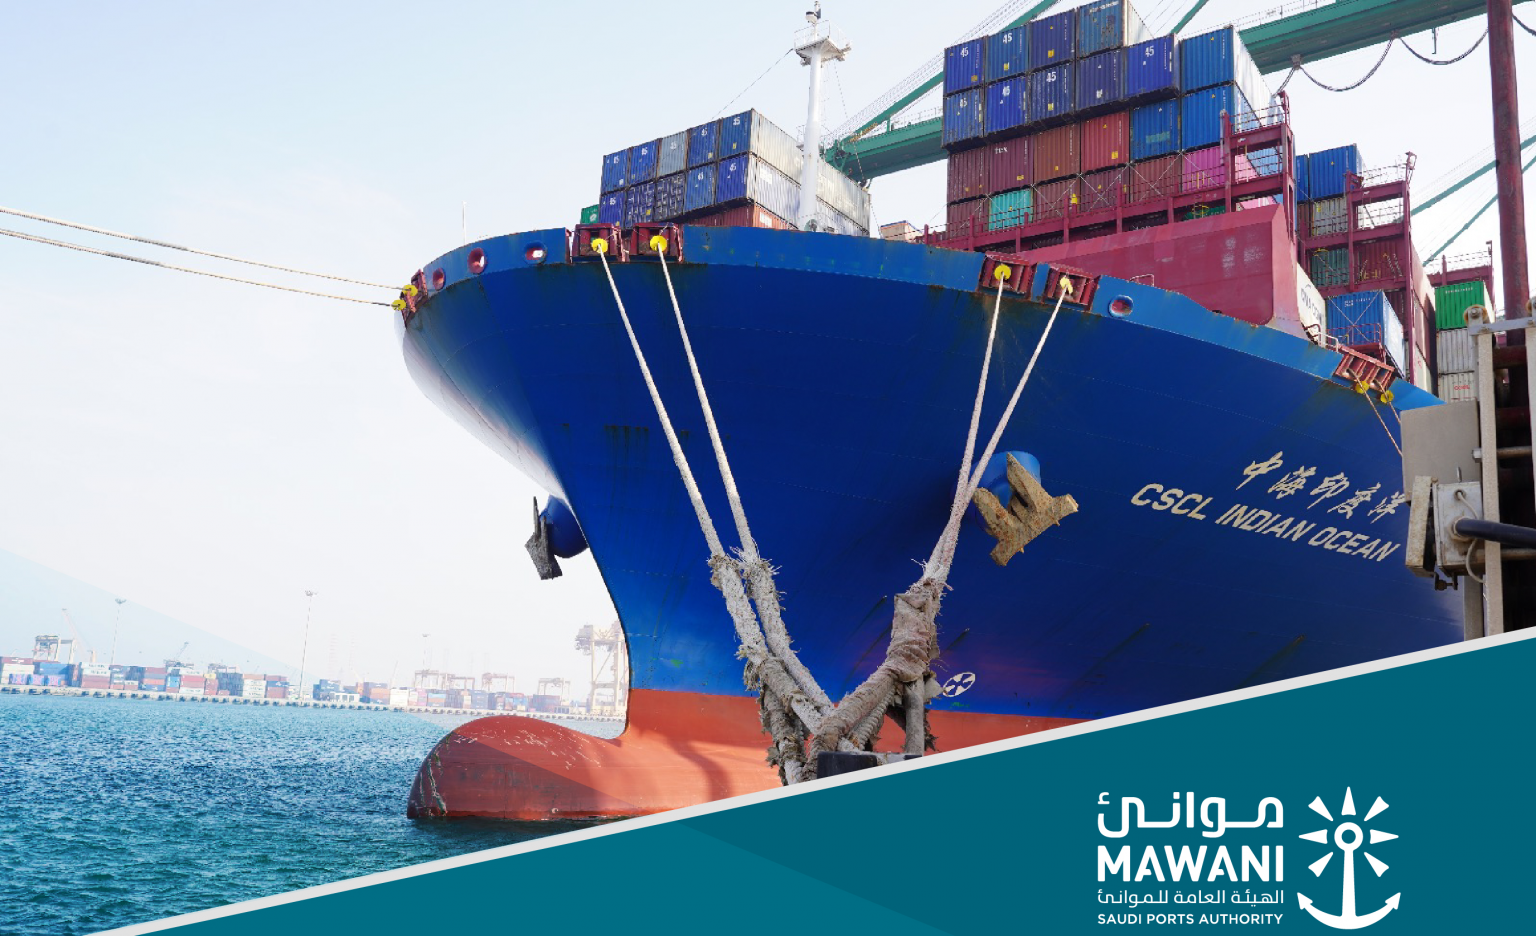 Arabia Saudita King Abdulaziz Port rompe récord de manejo de contenedores en un solo buque